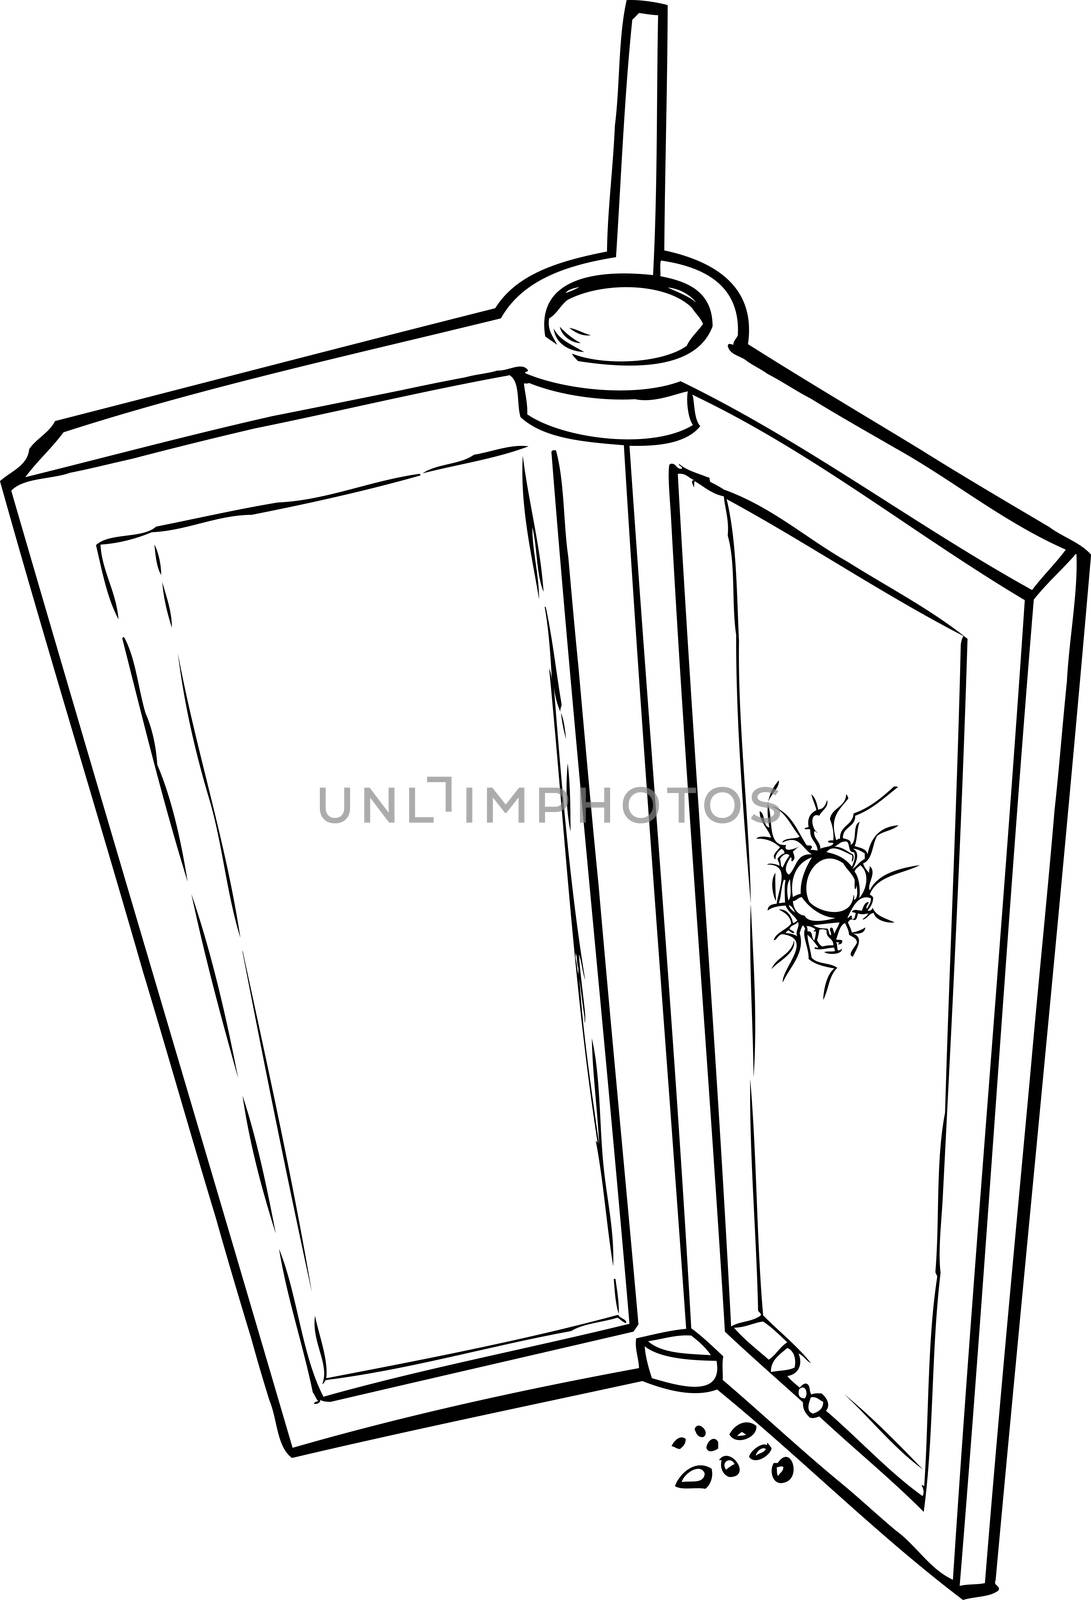 Outlined sketch of revolving door with broken glass